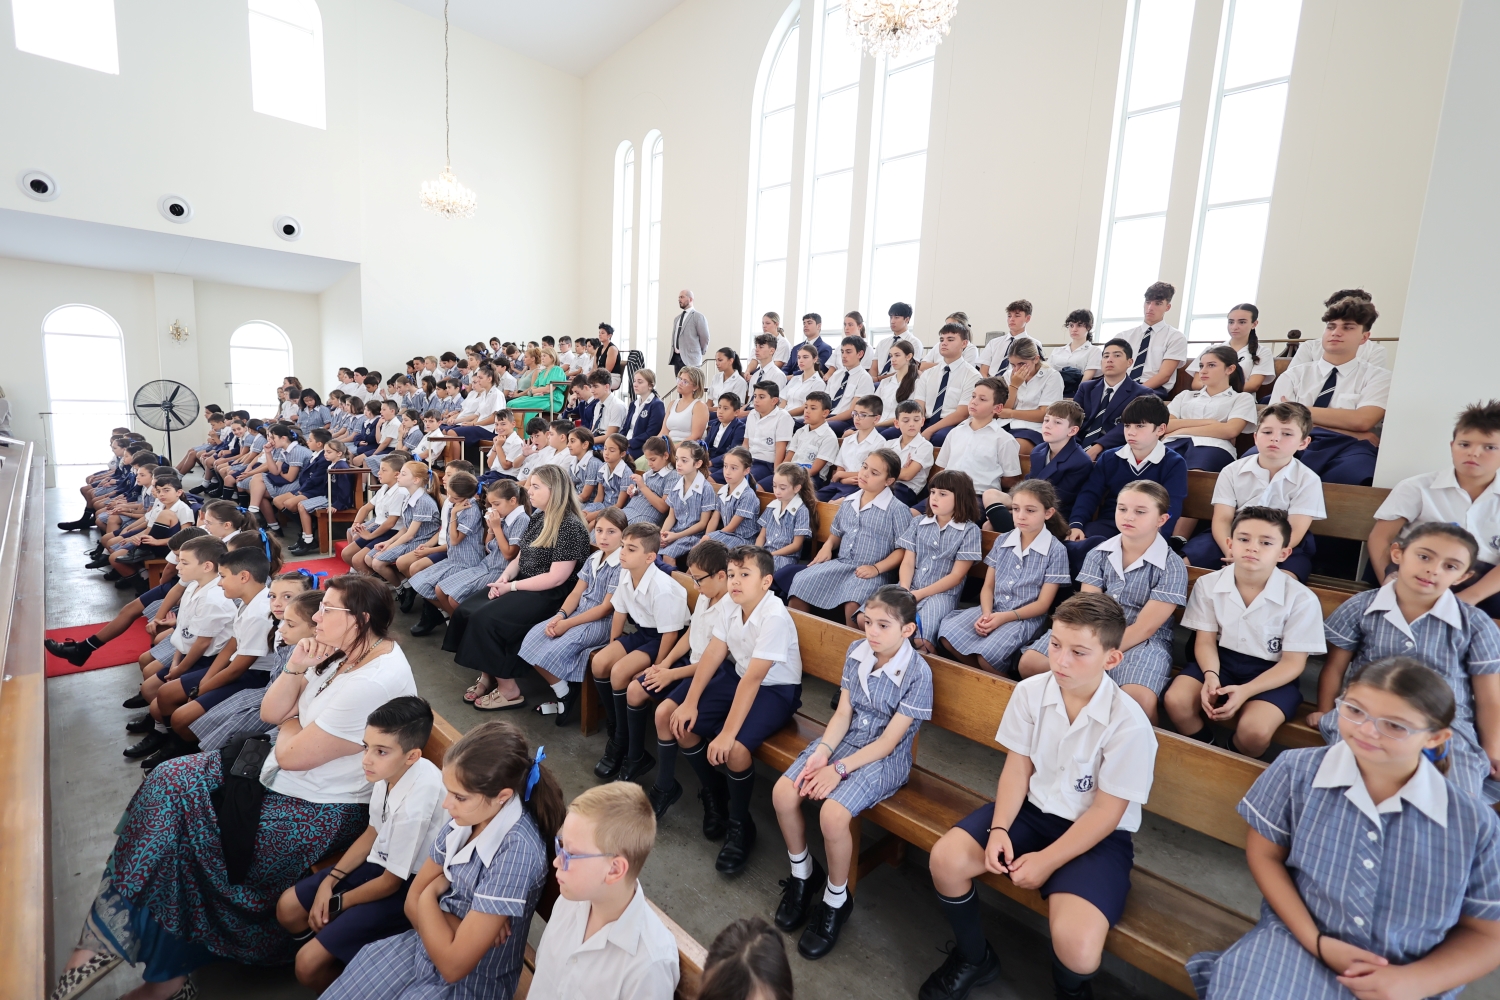 Σύδνεϋ: Αγιασμός για το νέο έτος με ρεκόρ μαθητικού πληθυσμού στο Κολλέγιο του Αγίου Σπυρίδωνος